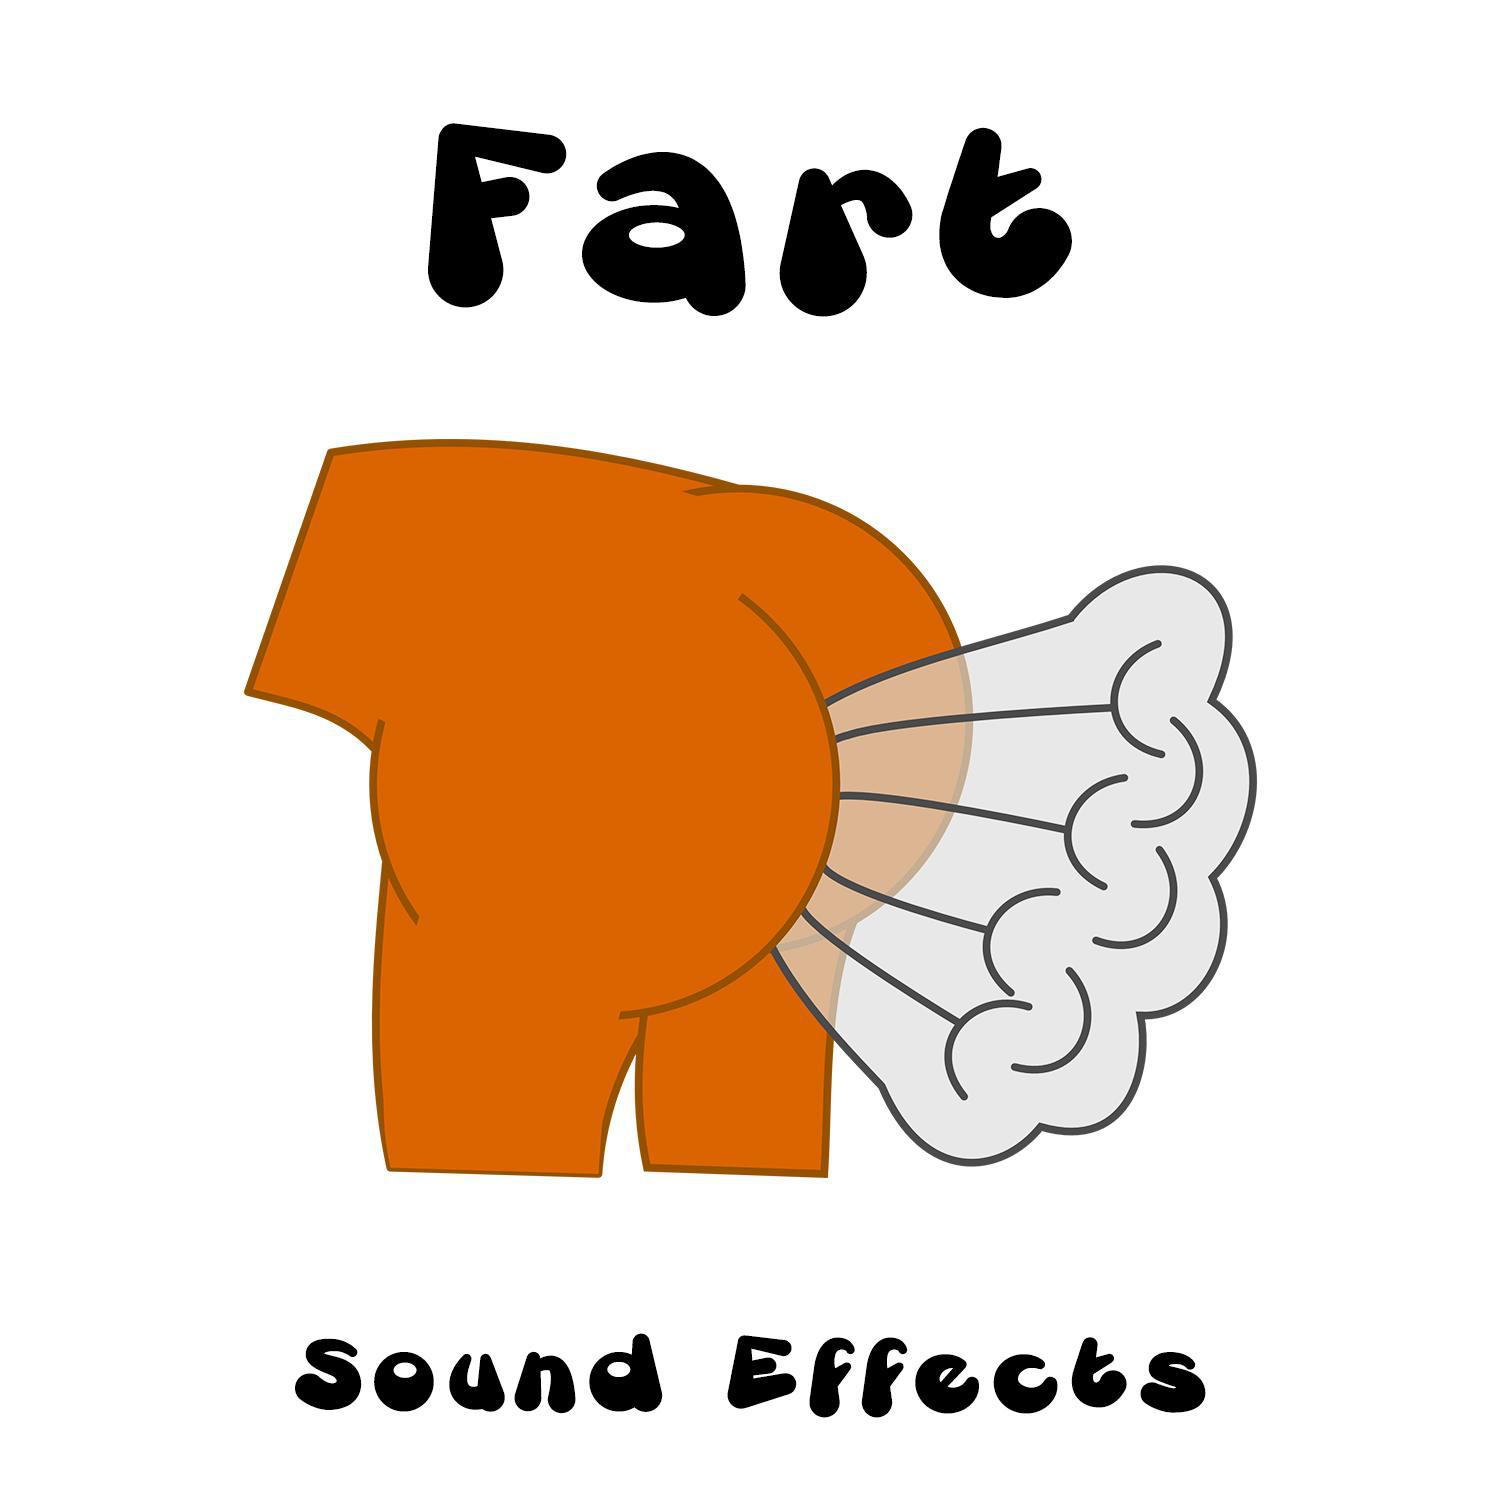 Fart noises